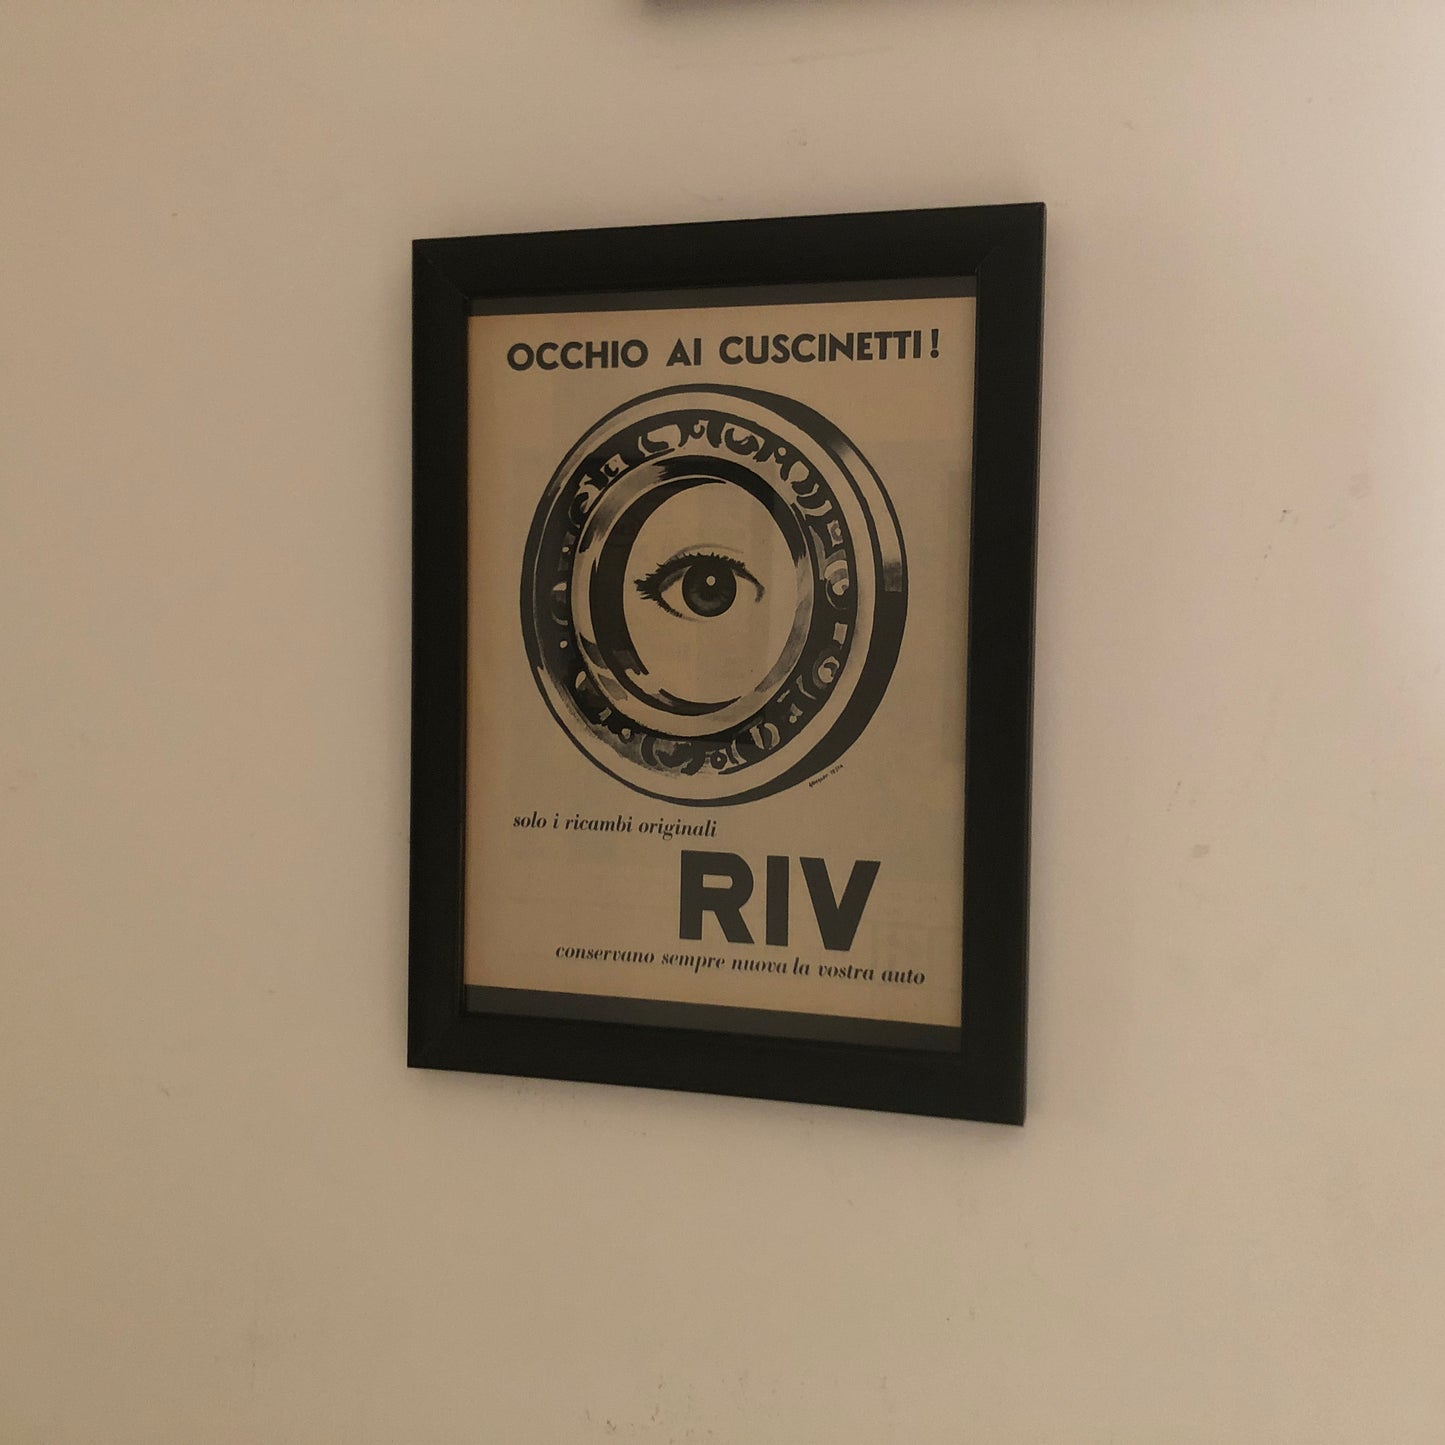 RIV, Pubblicità Anno 1960 Ricambi Originali RIV Disegnata da Armando Testa